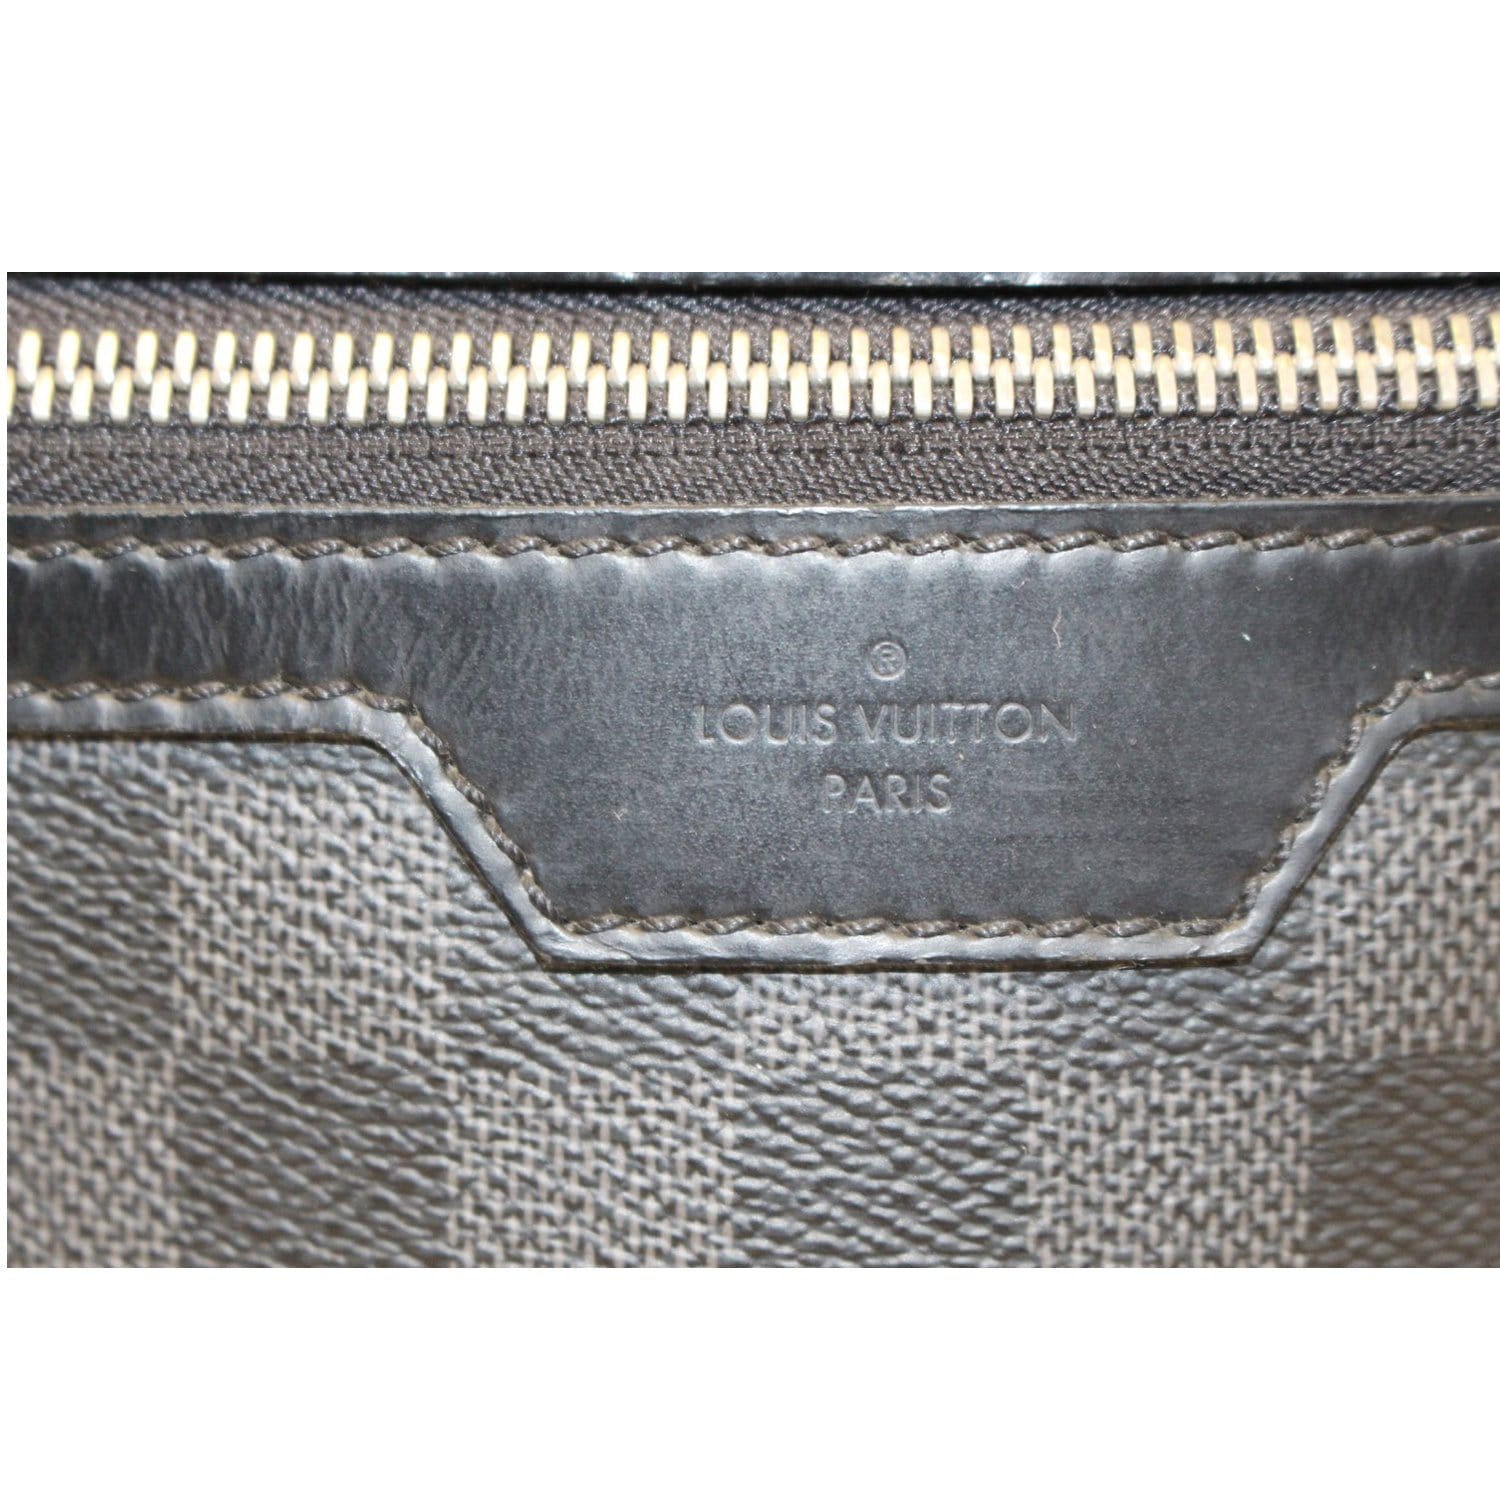 Sold at Auction: Louis Vuitton, LOUIS VUITTON 'MICHAEL' DAMIER